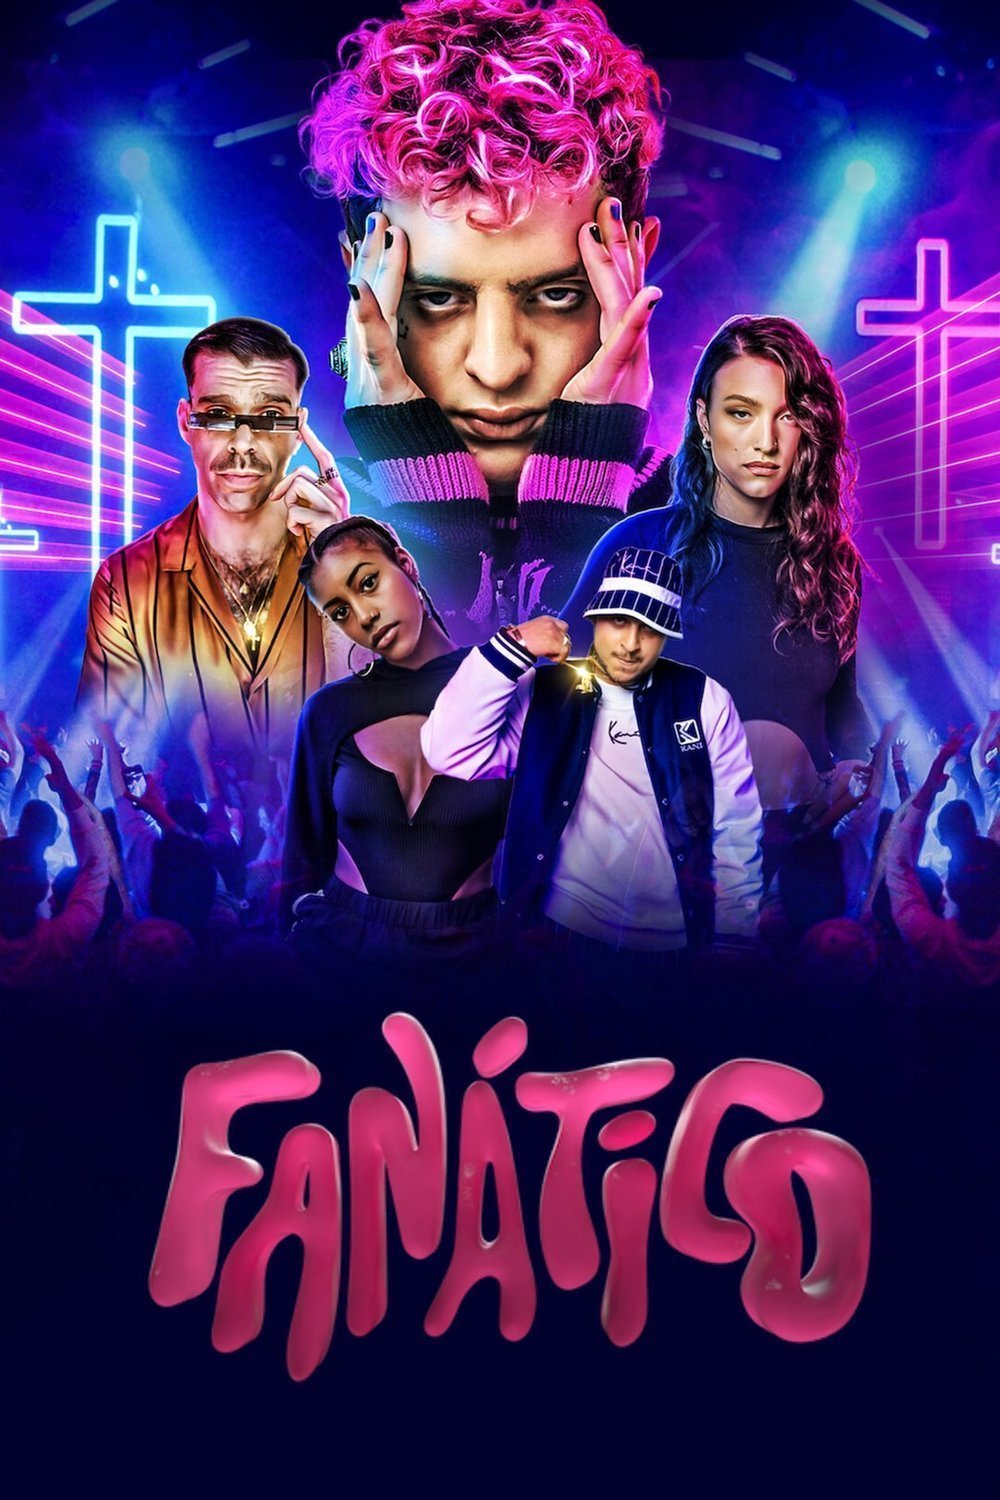 L'affiche originale du film Fanático en espagnol